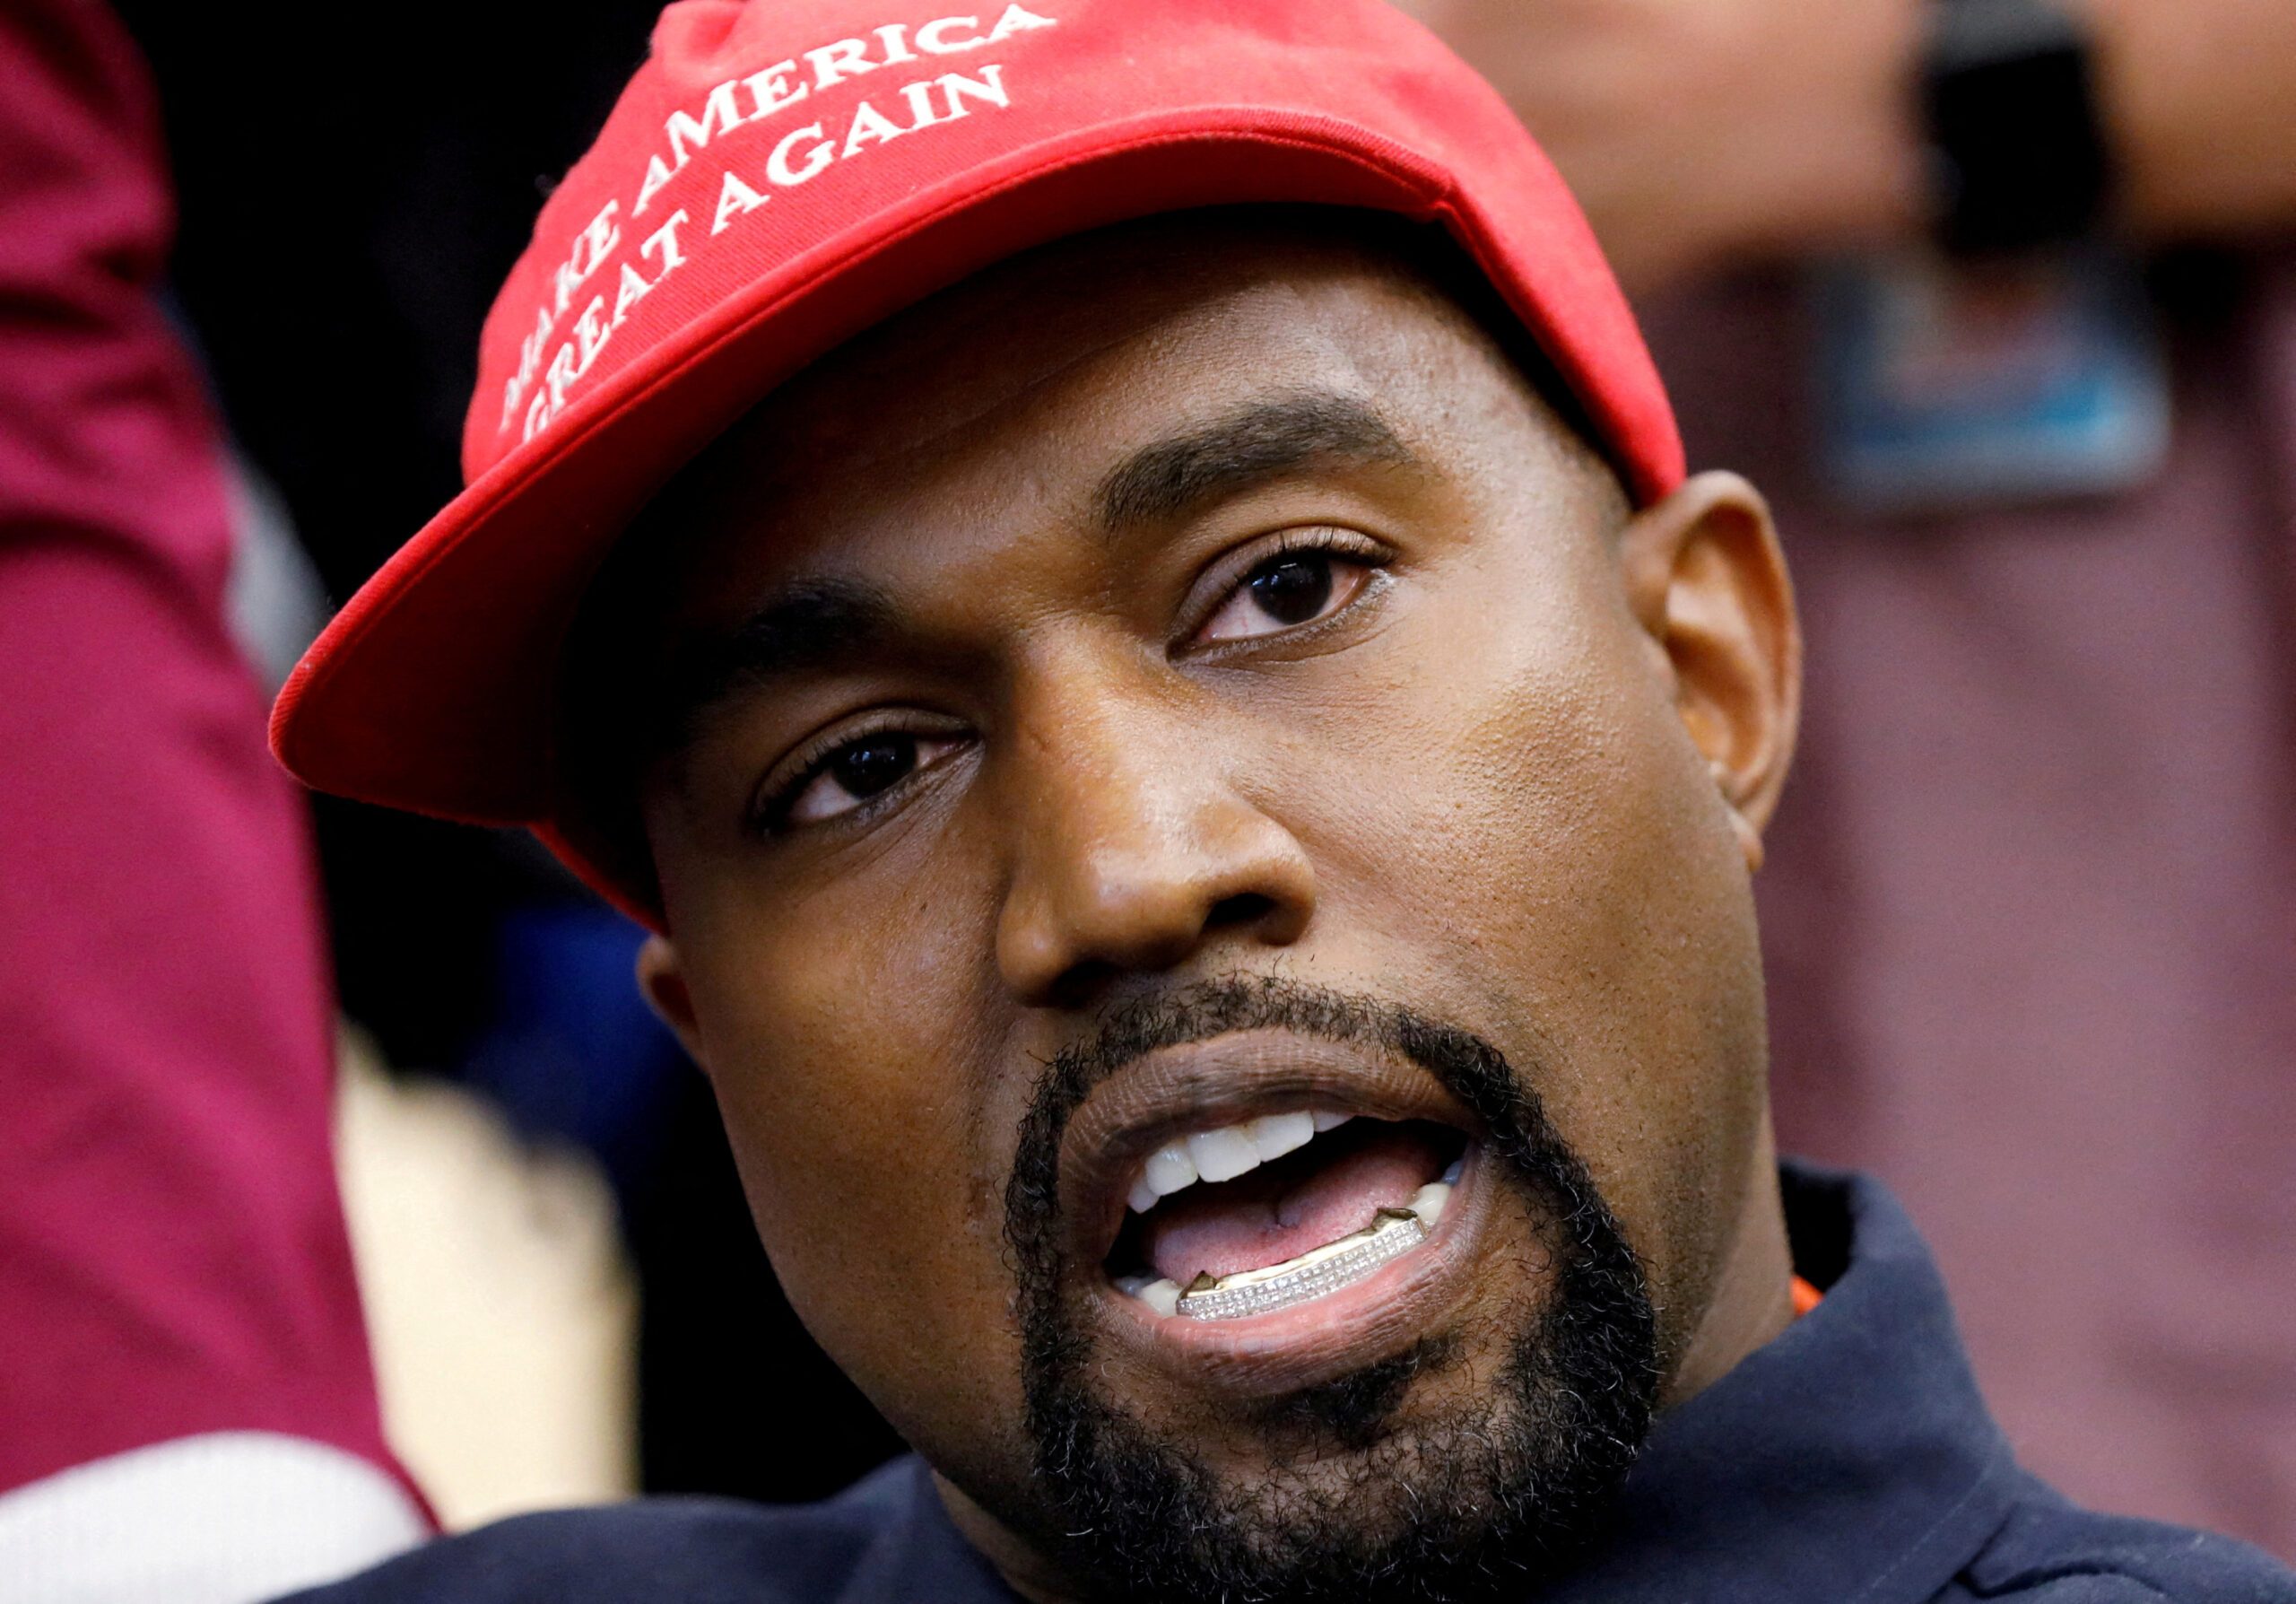 Kanye West no longer plans to buy social media platform Parler